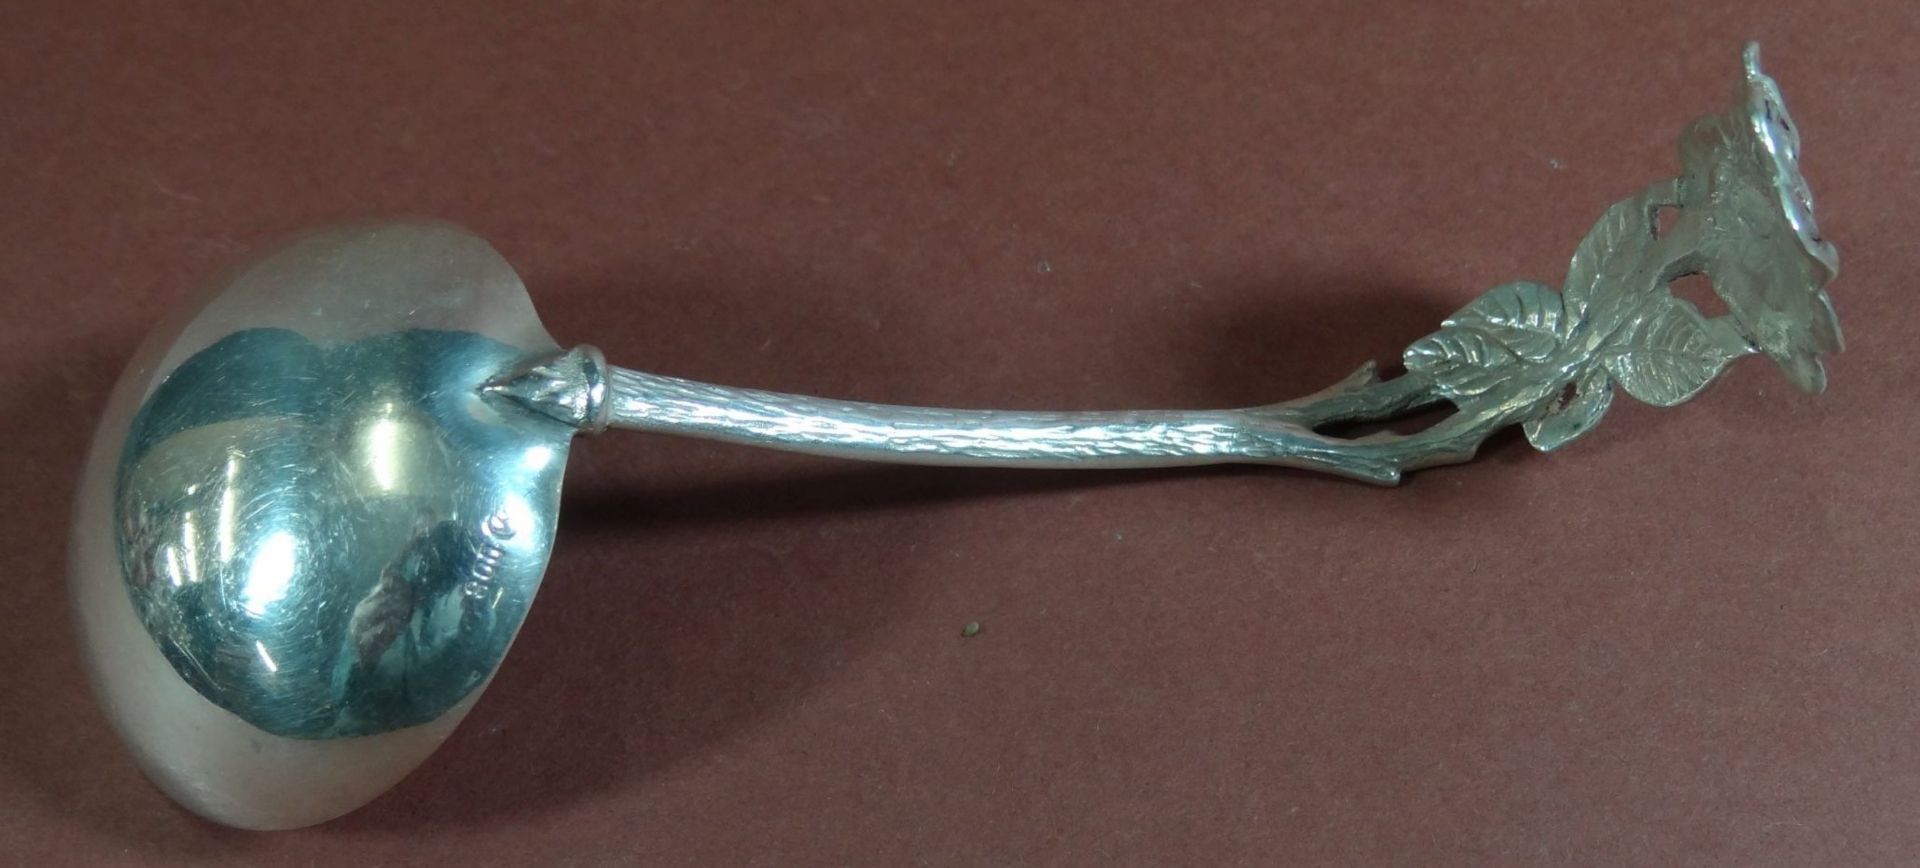 Gebogener Silber-Sahnelöffel, Rosenmuster, L-11 cm, 18 gr. - Bild 3 aus 4